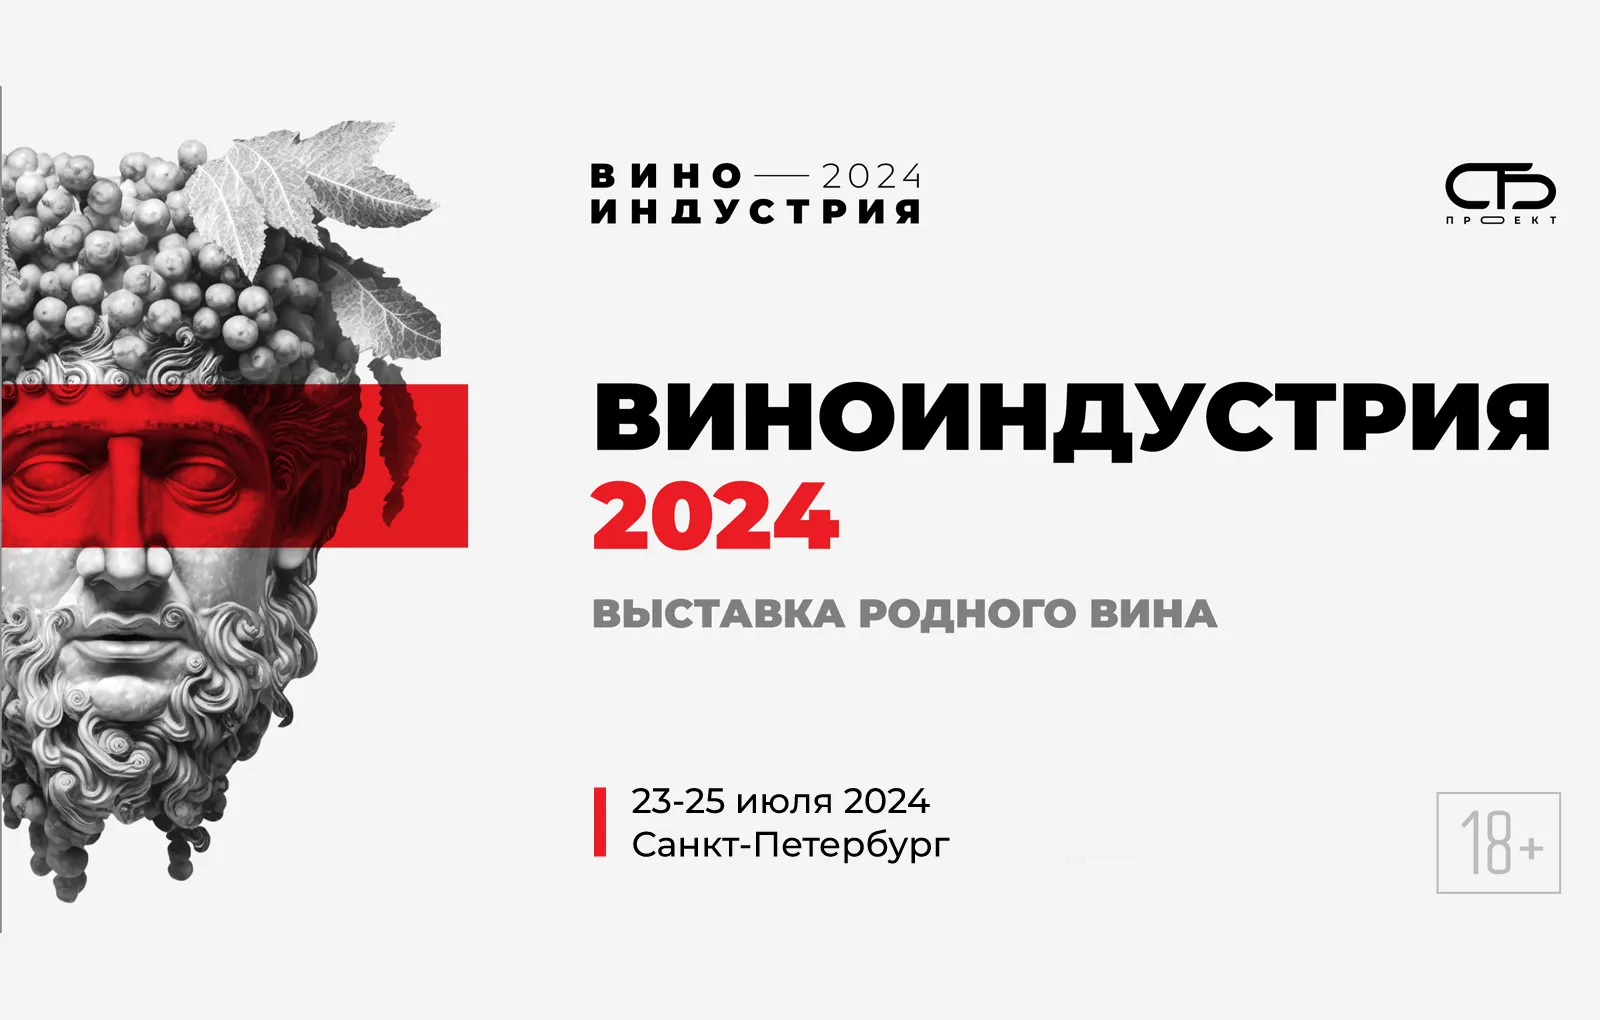 Виноиндустрия 2024: всероссийская выставка для бизнеса и культурного досуга 